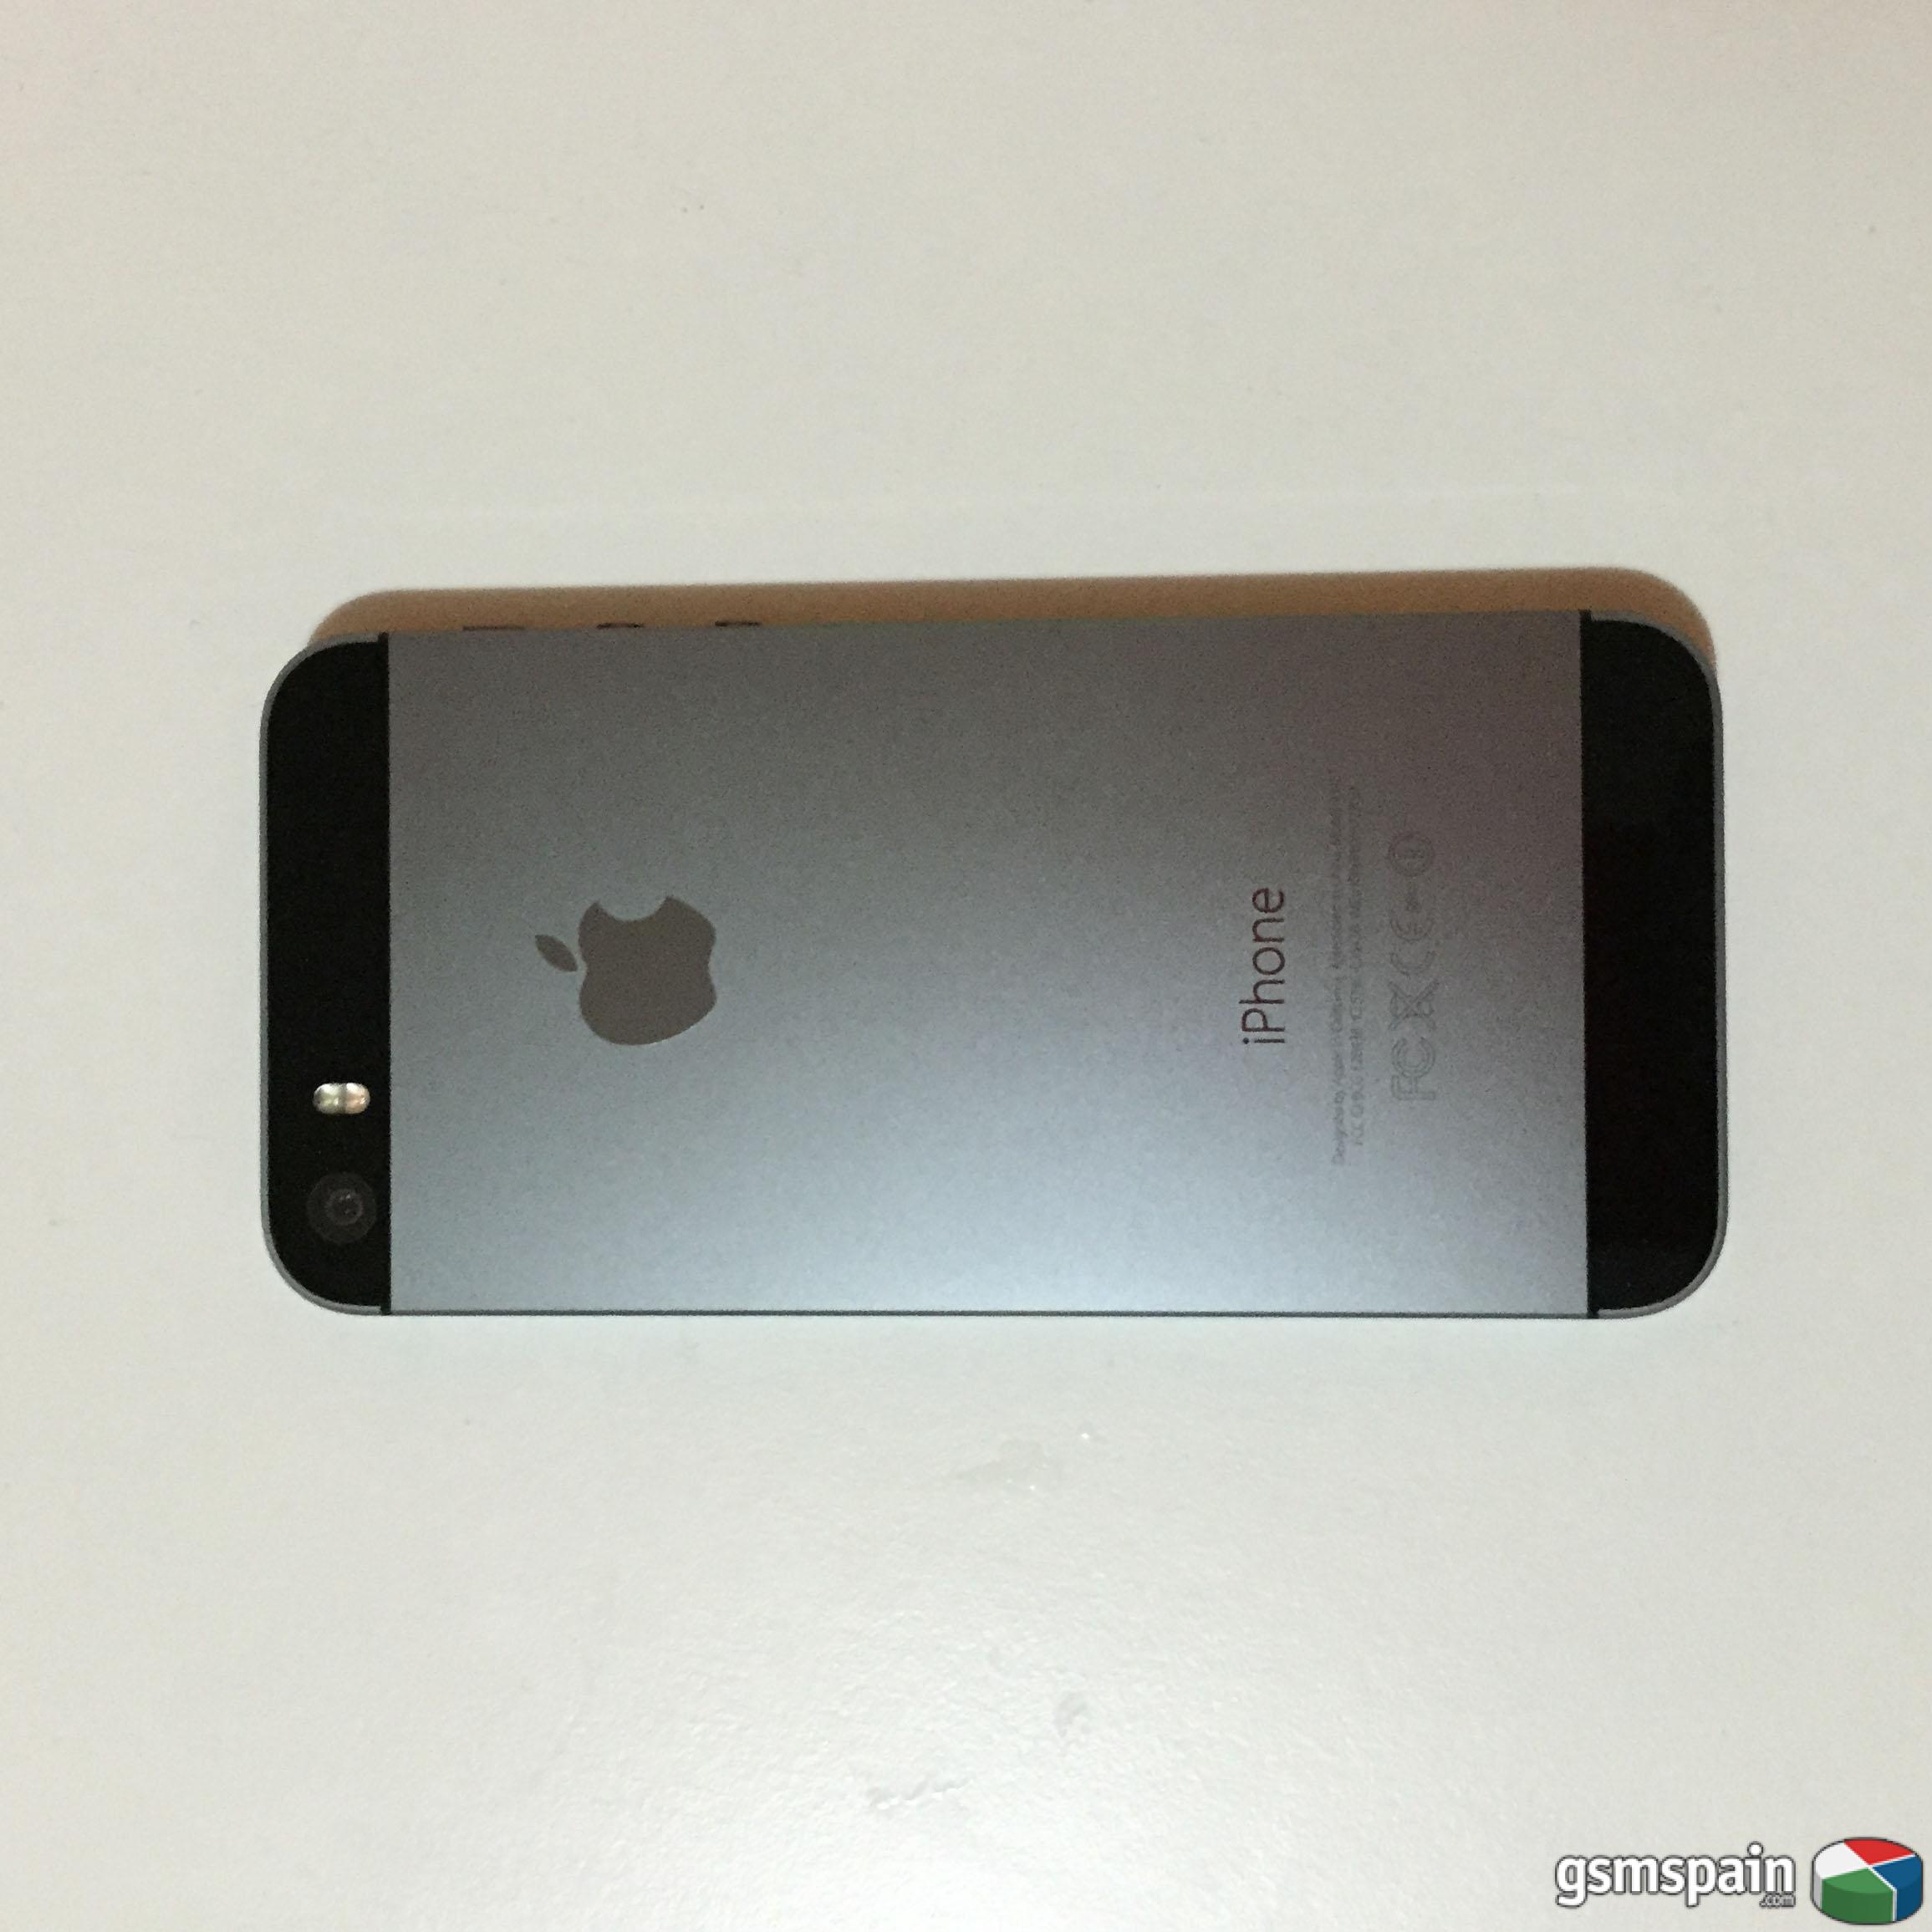 [VENDO] iPhone 5S 16 GB, Space Gray, Libre de origen y en GARANTA